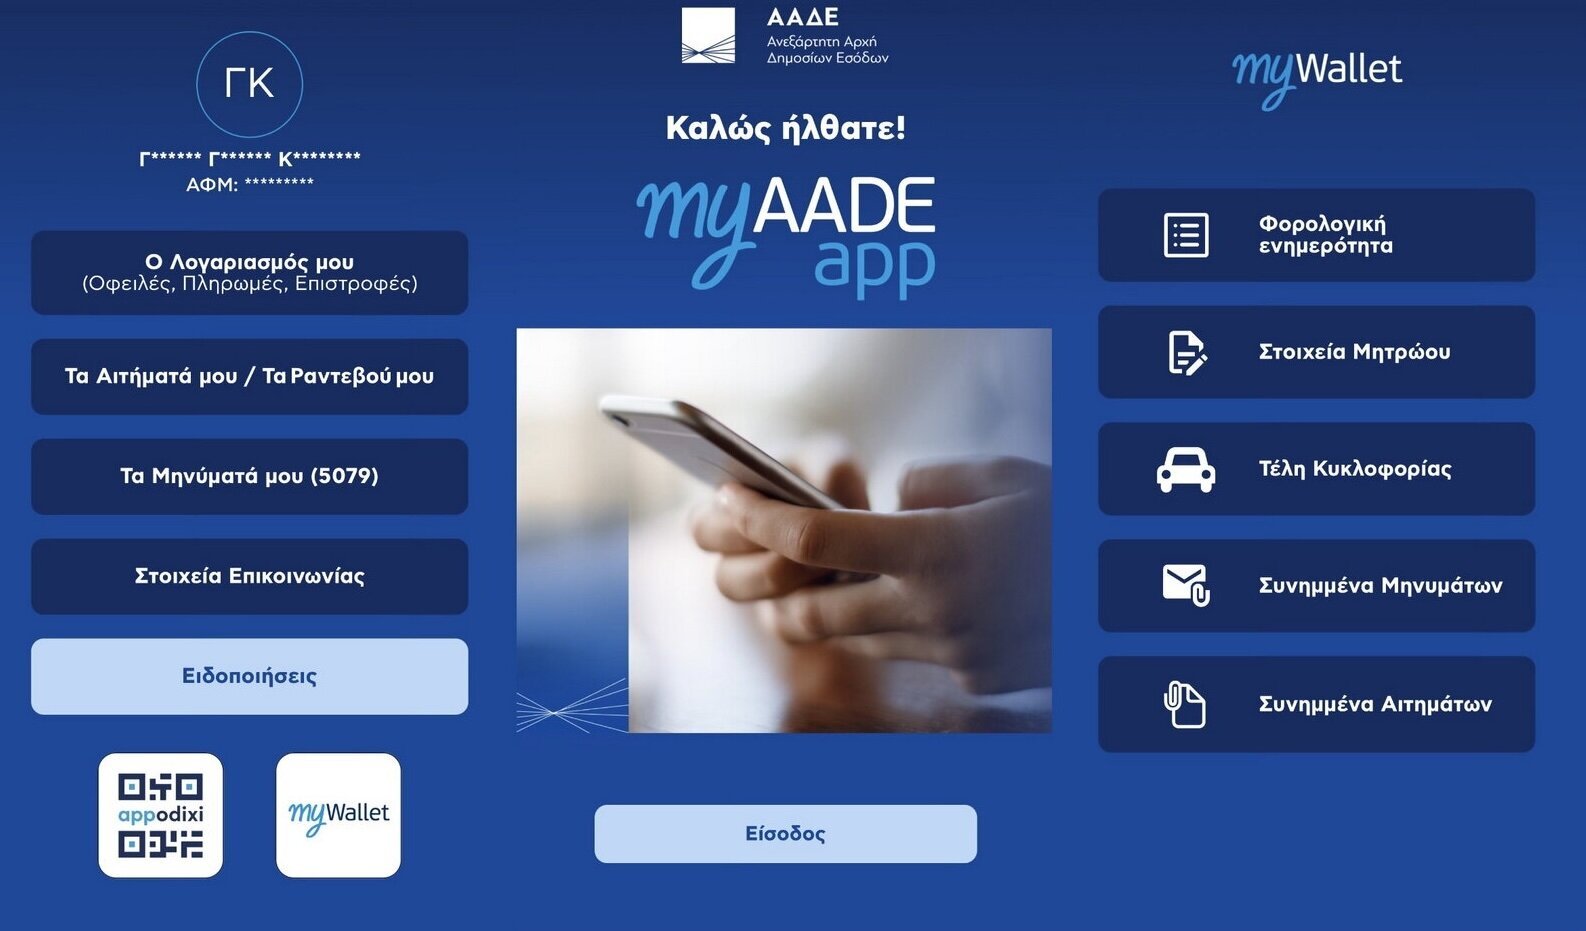 Το MyAADE app δίνει την δυνατότητα διαχείρισης φορολογικών υποθέσεων μέσω smartphone, σε πολίτες και εταιρείες